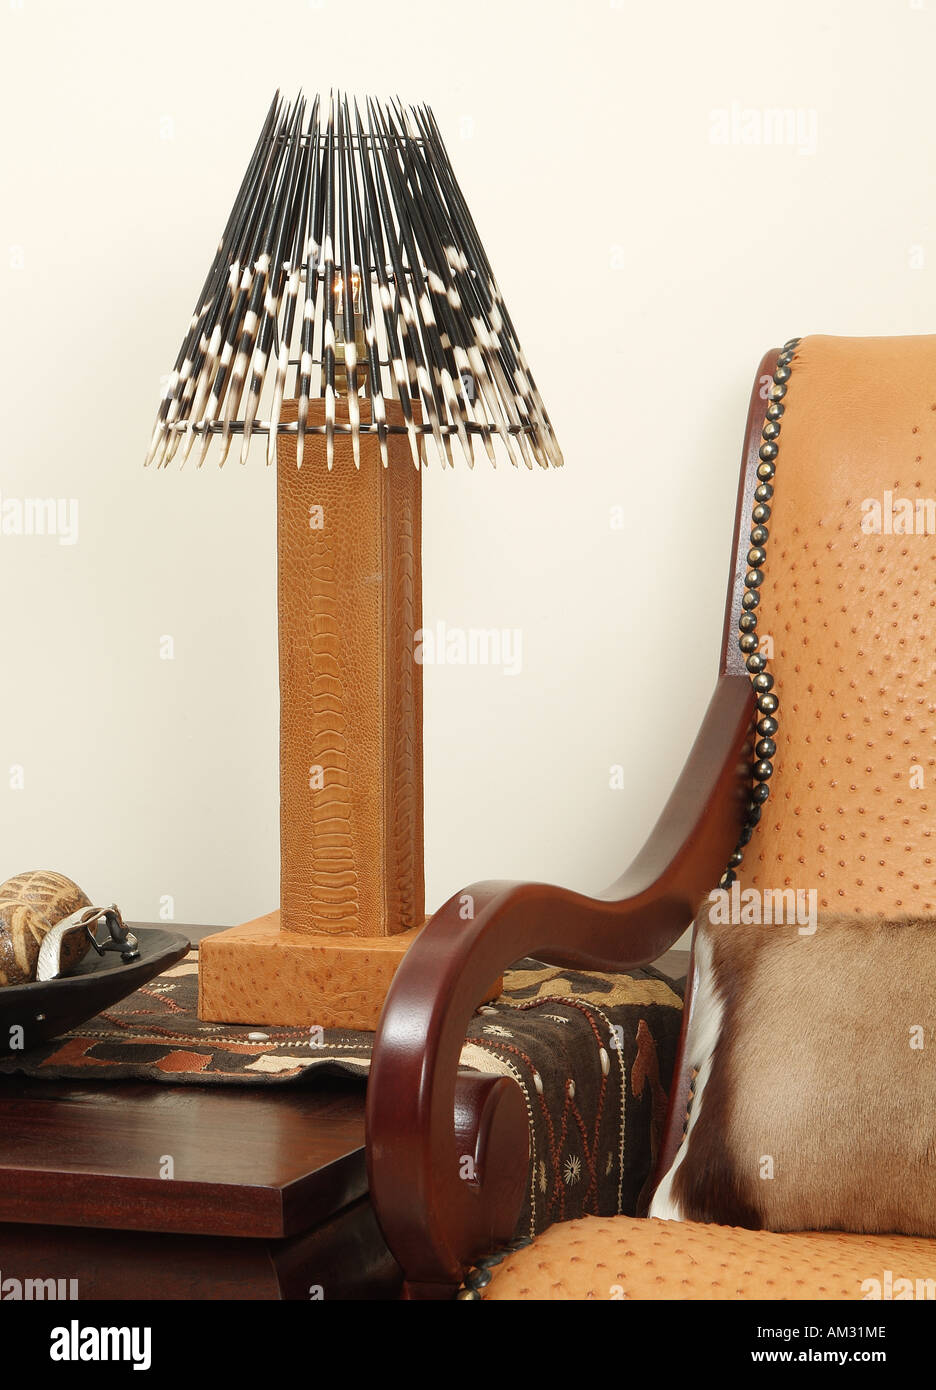 Stachelschwein Feder Lampe und Strauß Haut Stuhl Stockfotografie - Alamy